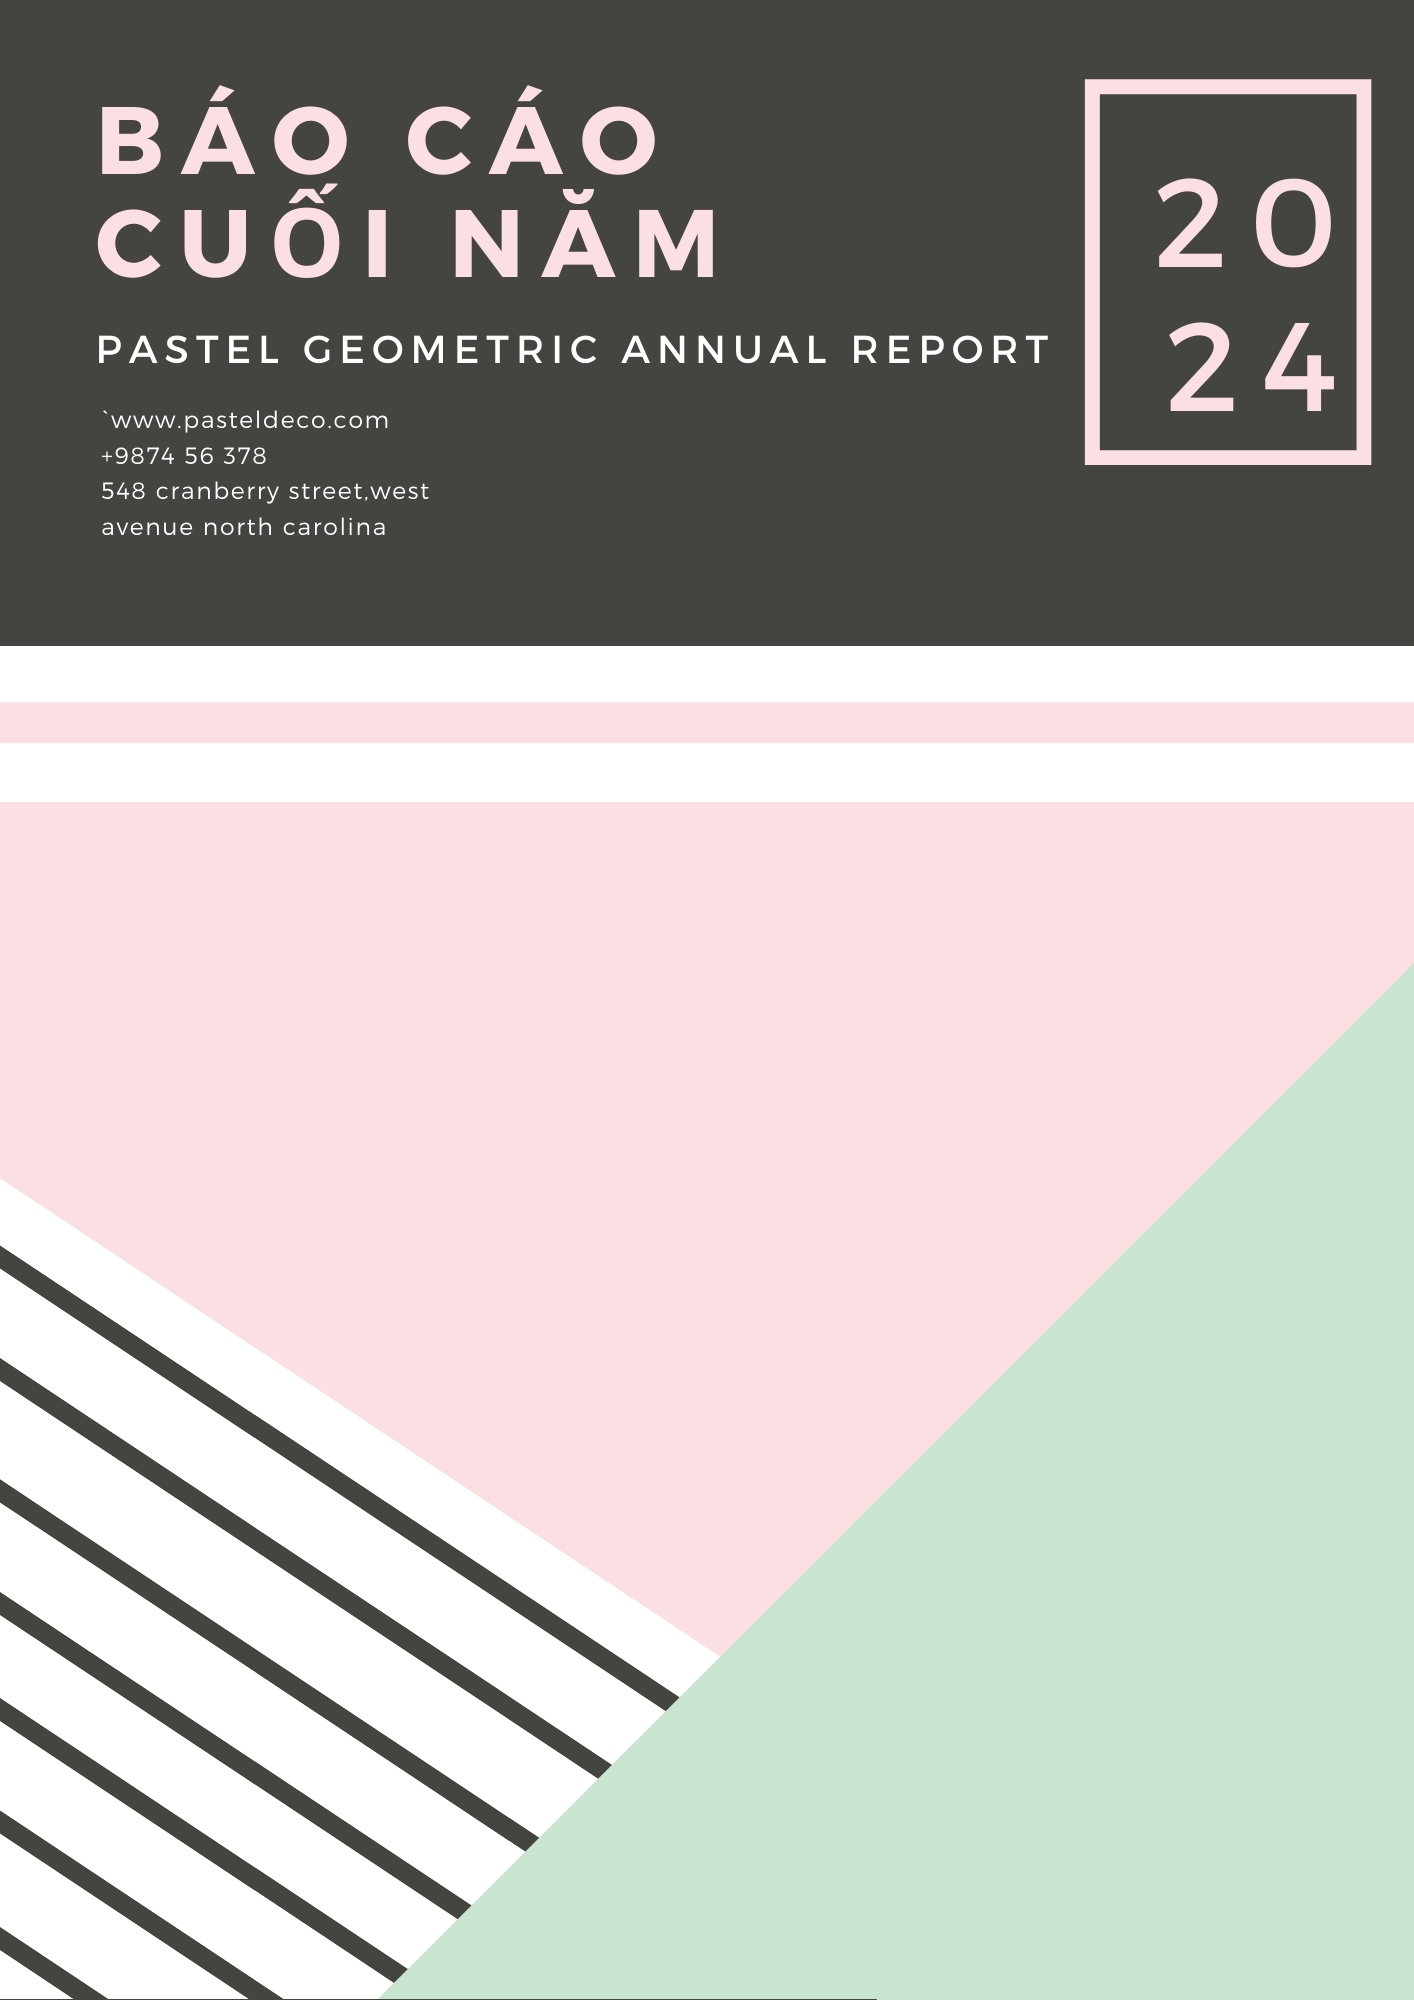 Slide báo cáo cuối năm màu pastel nhẹ nhàng